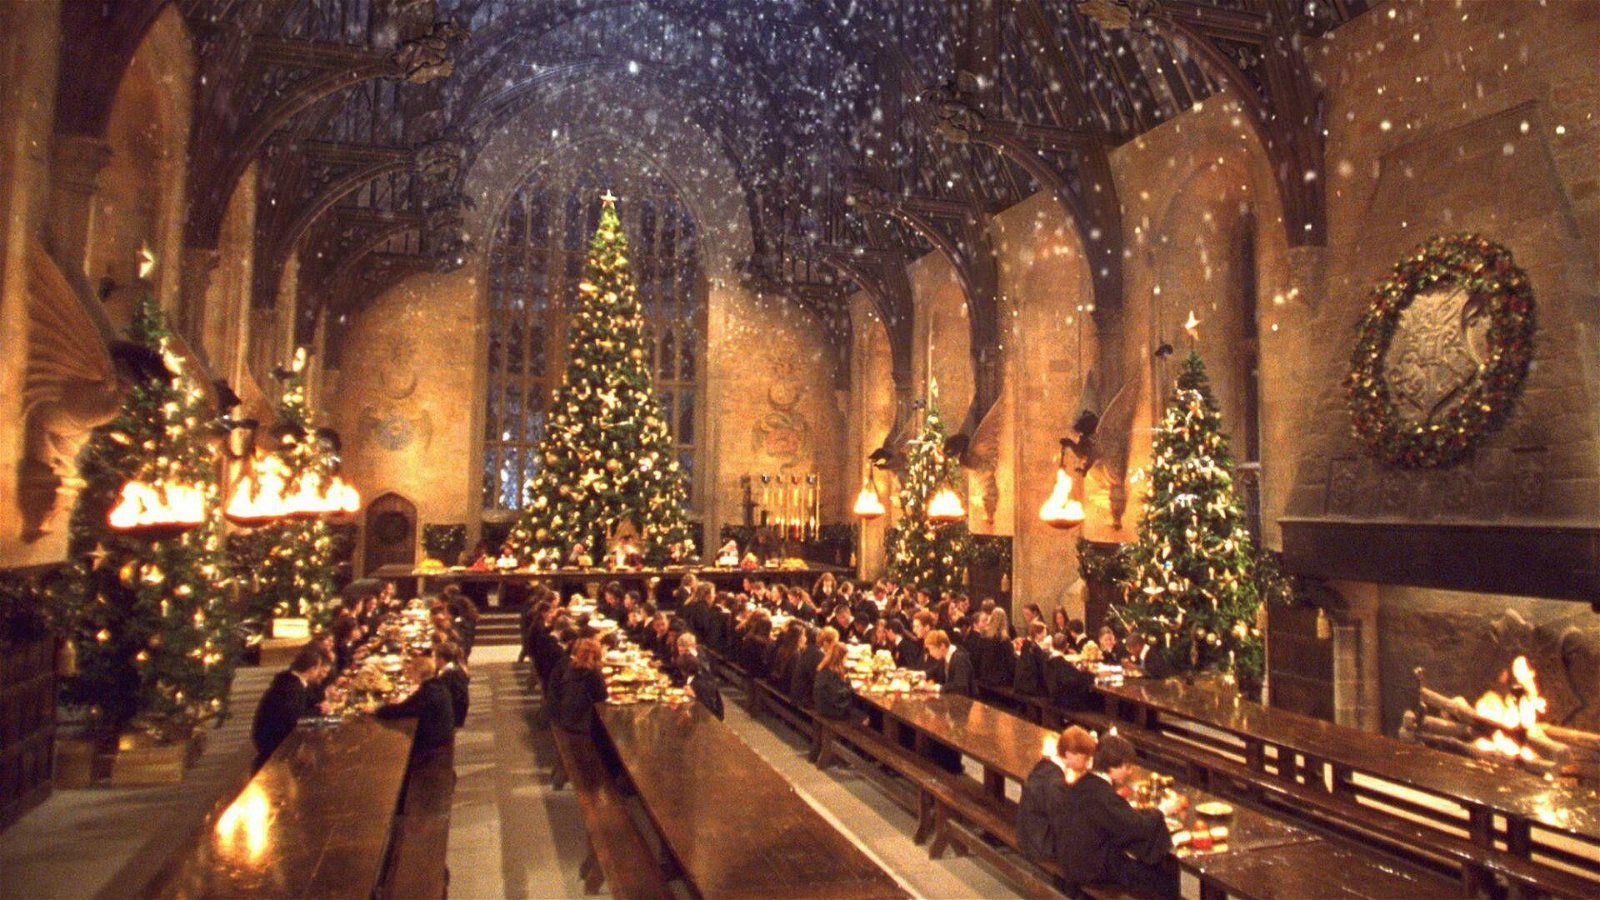 Immagine di Natale come un Weasley, Natale in famiglia